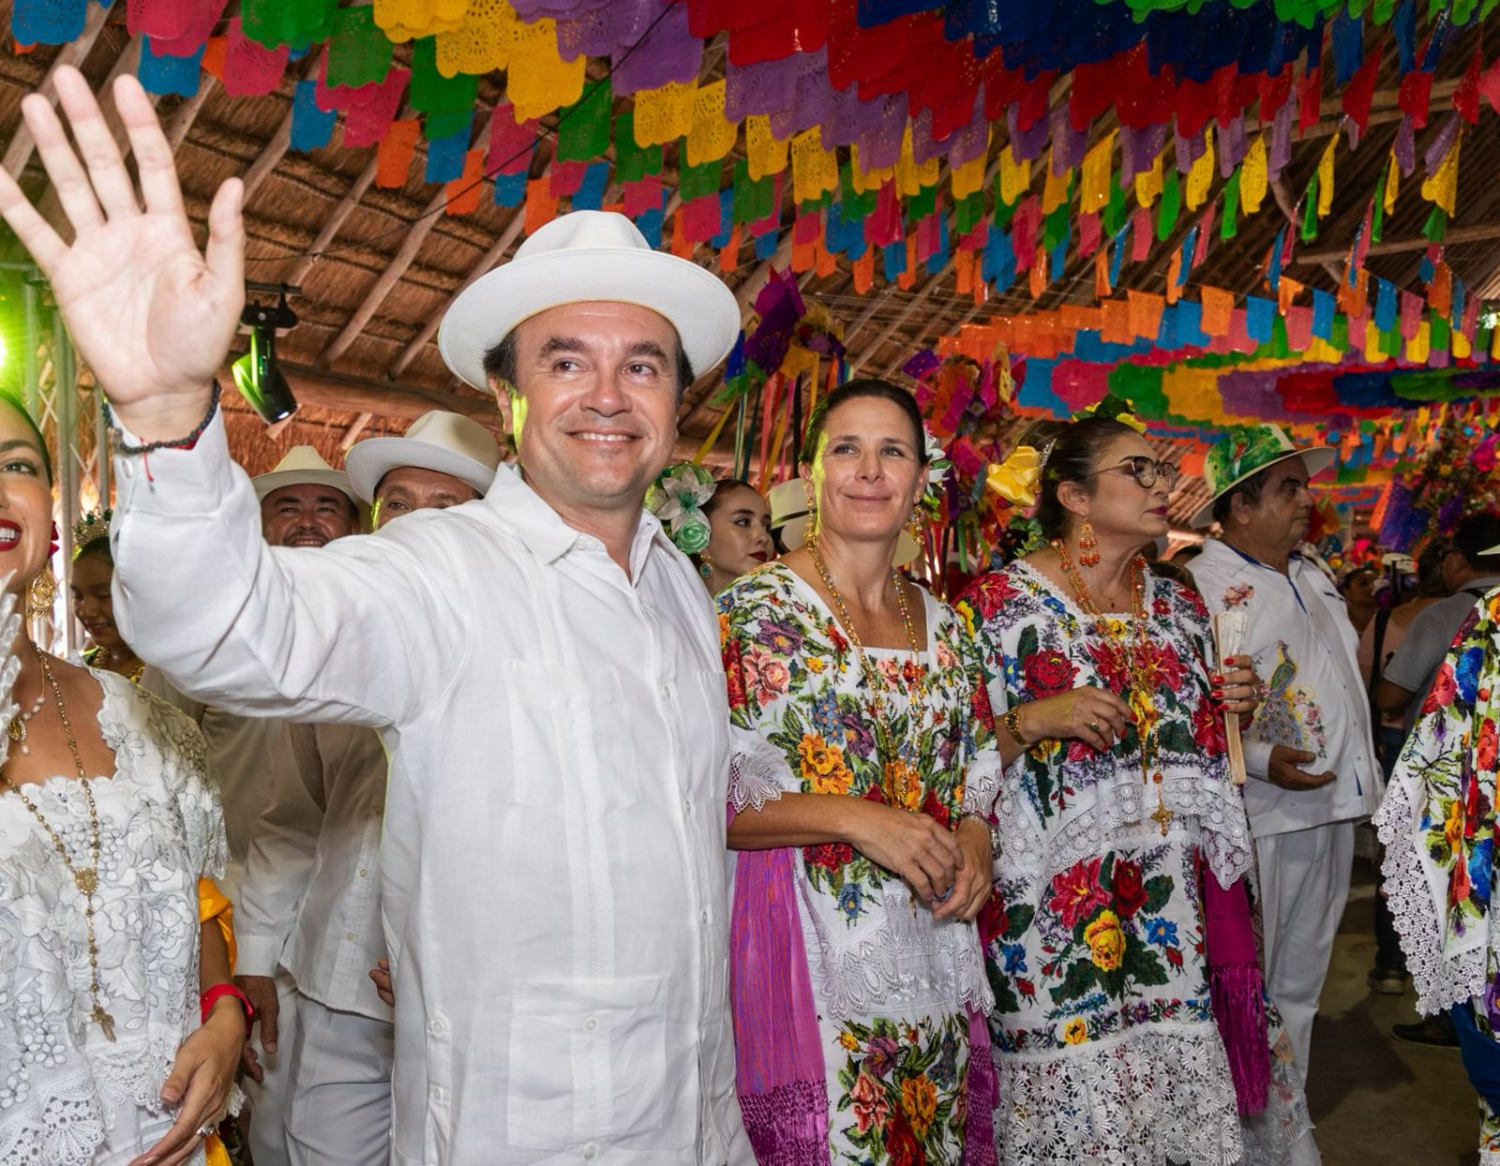 Pedro Joaquín unido a los 176 años de la fiesta de "El cedral", tradición e identidad